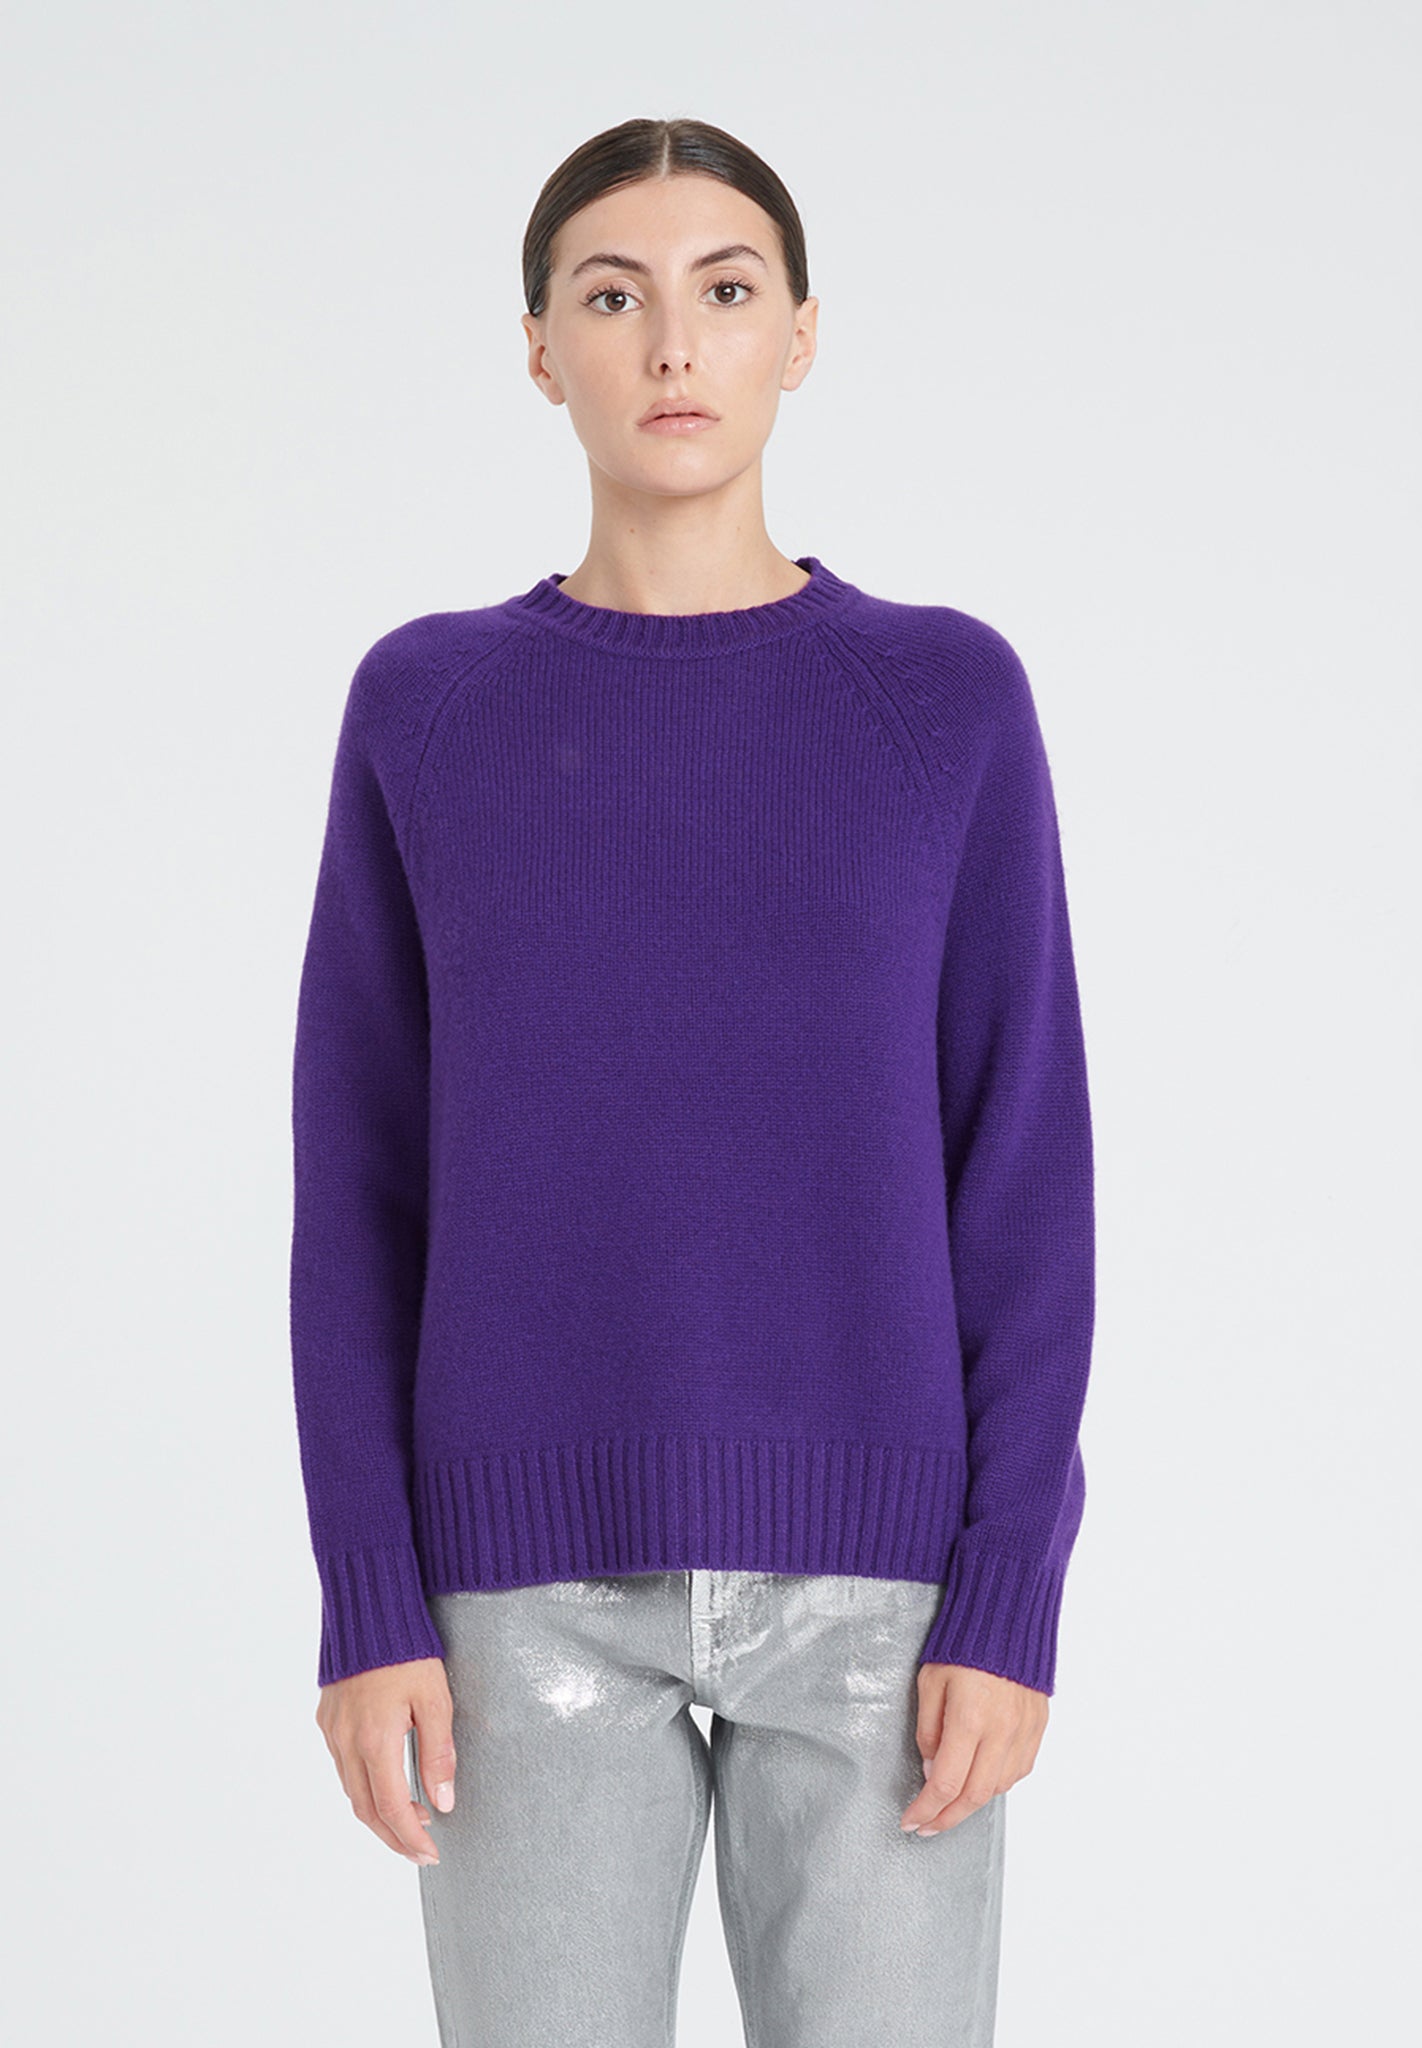 ZAYA 7 Round neck sweater with raglan sleeves in purple 6-thread cashmere